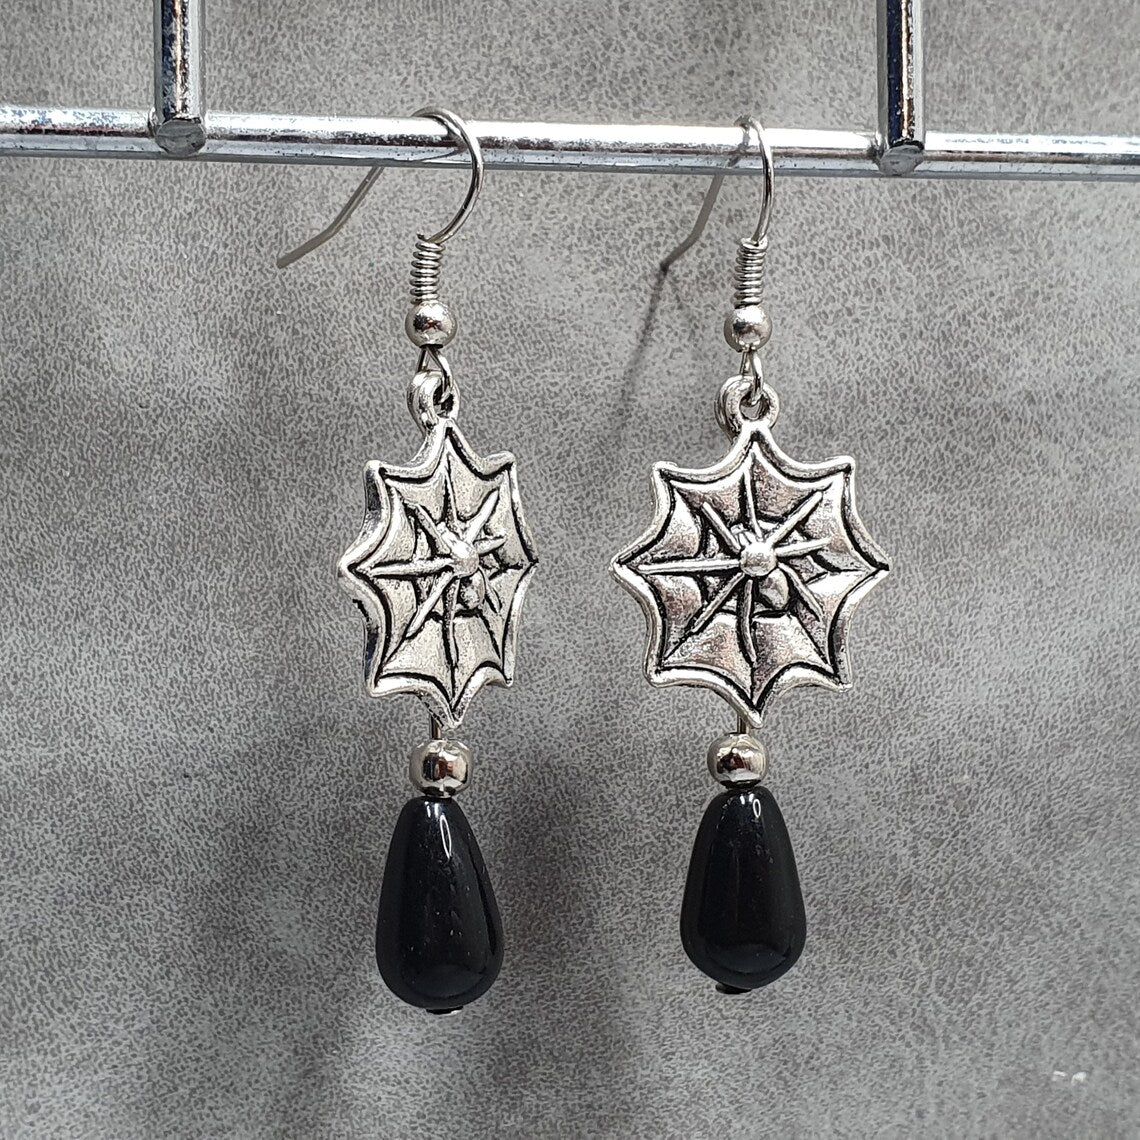 Gothic Ohrhänger mit Spinne im Netz, silberfarbig mit schwarzen Glastropfen